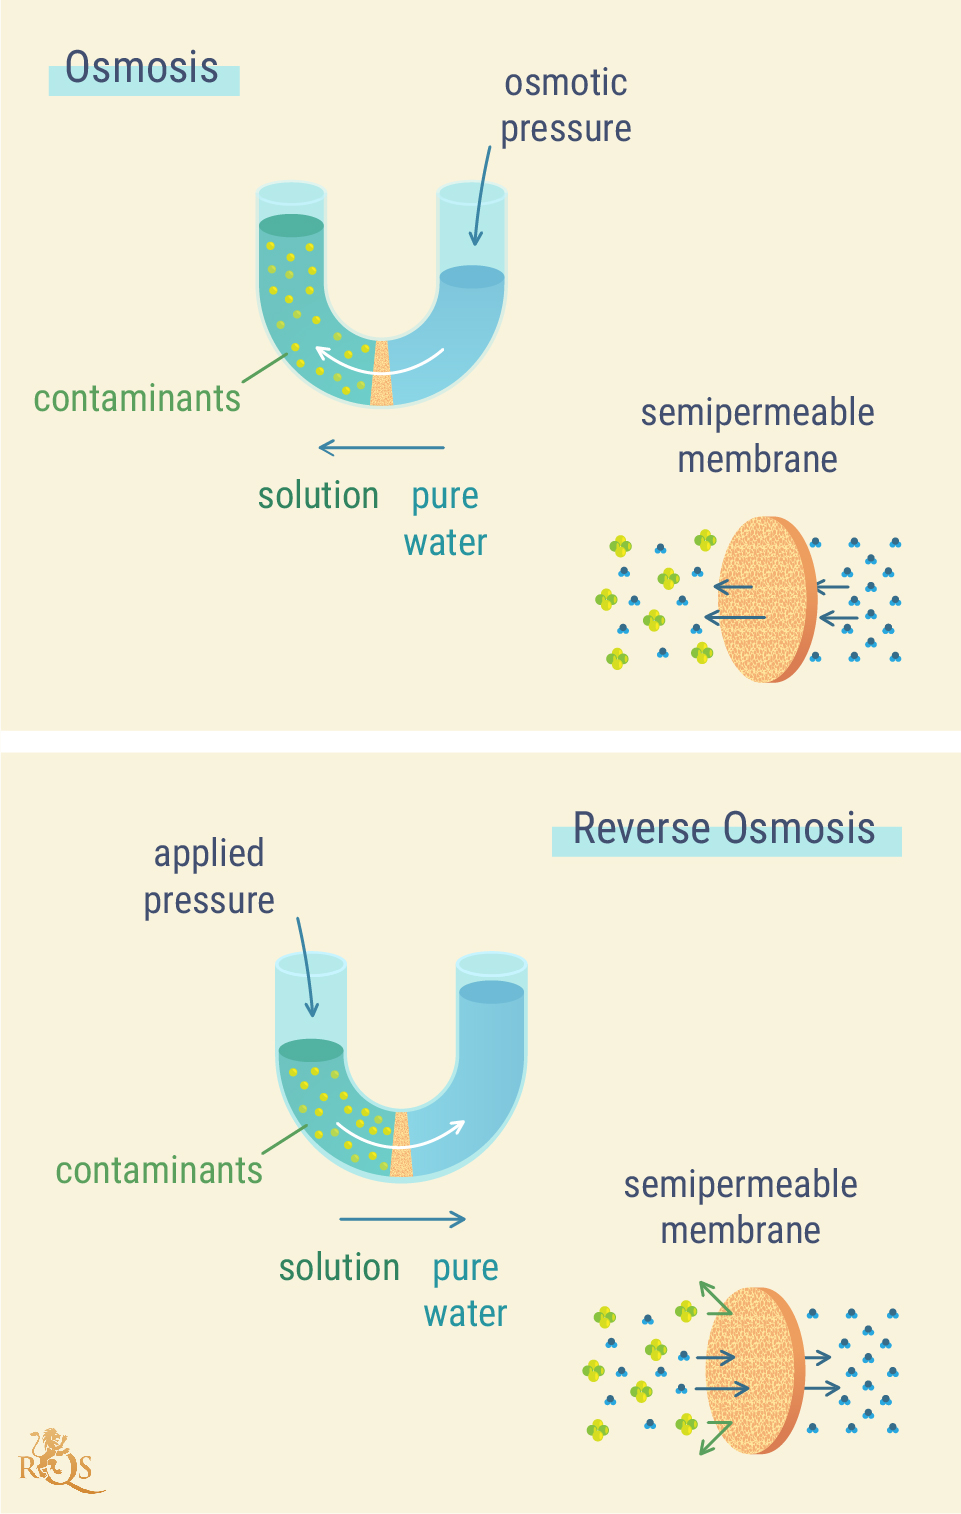 Come funziona l’osmosi inversa?